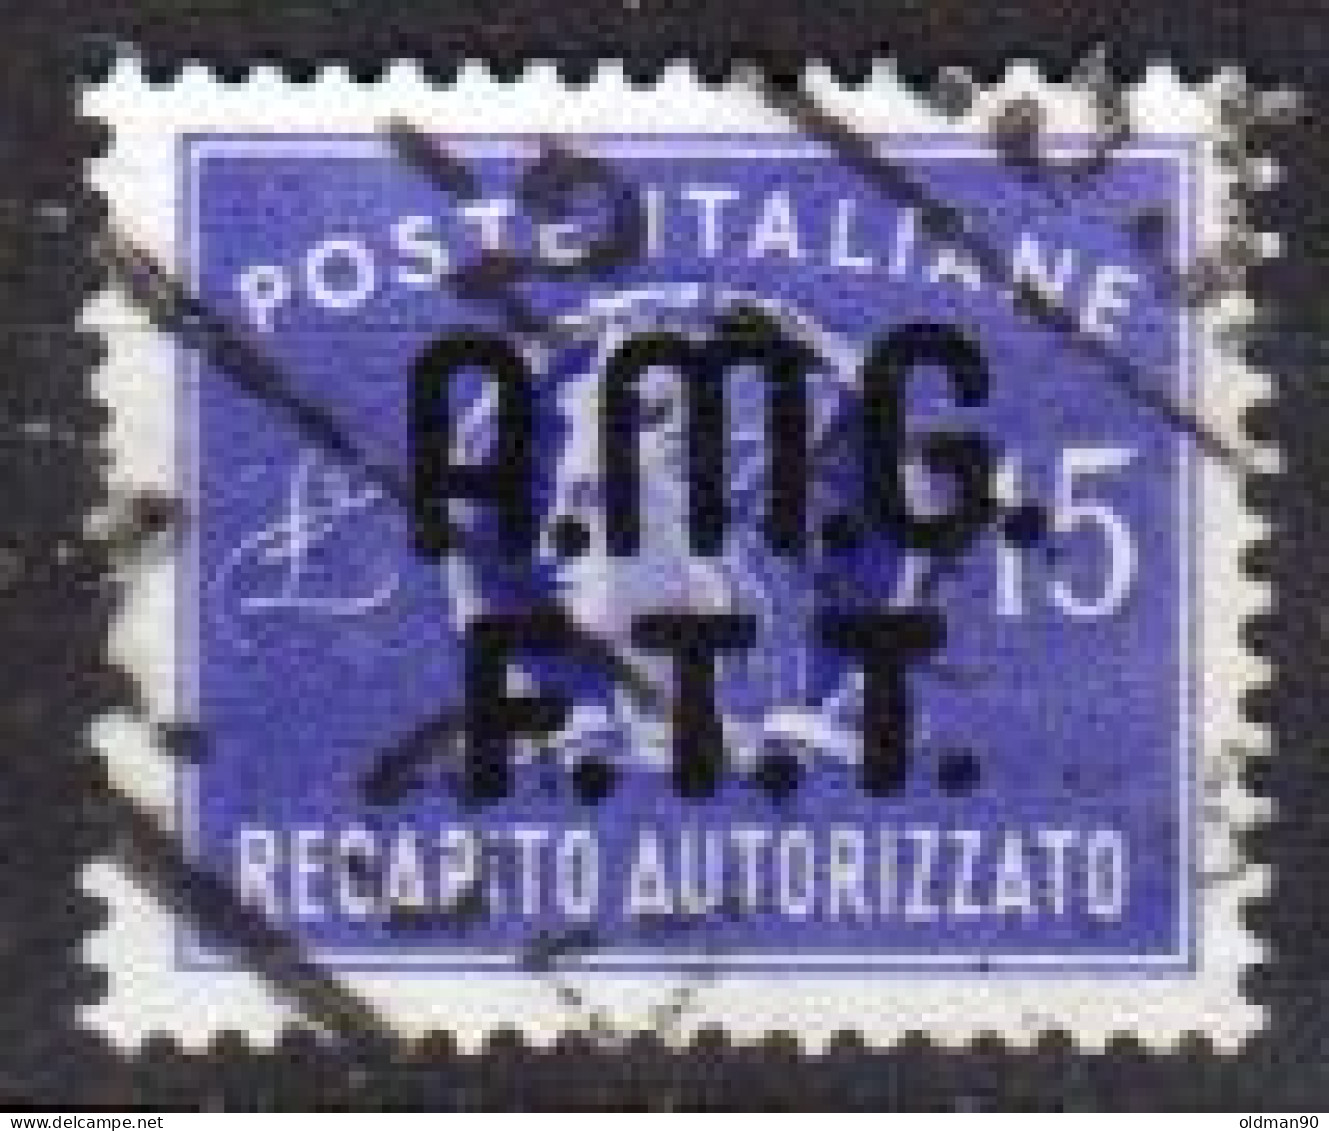 Italia-A-0742: TRIESTE - Zona A - R. A. 1949 (o) Used - Uno solo - Qualità a vostra opiniove..